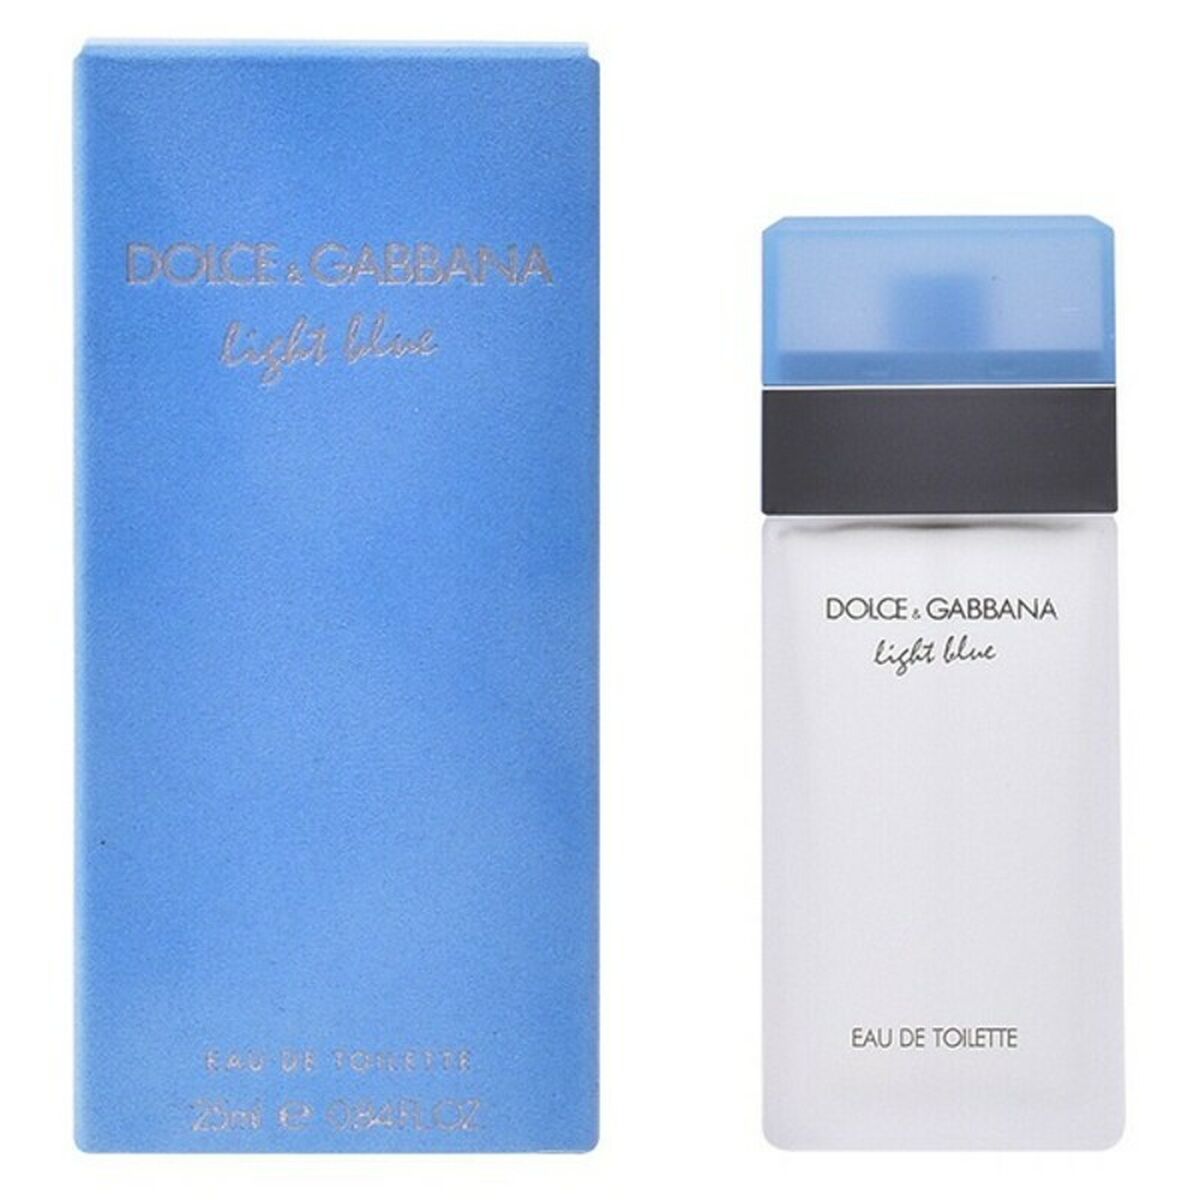 Damesparfum Dolce & Gabbana EDT Light Blue (50 ml)